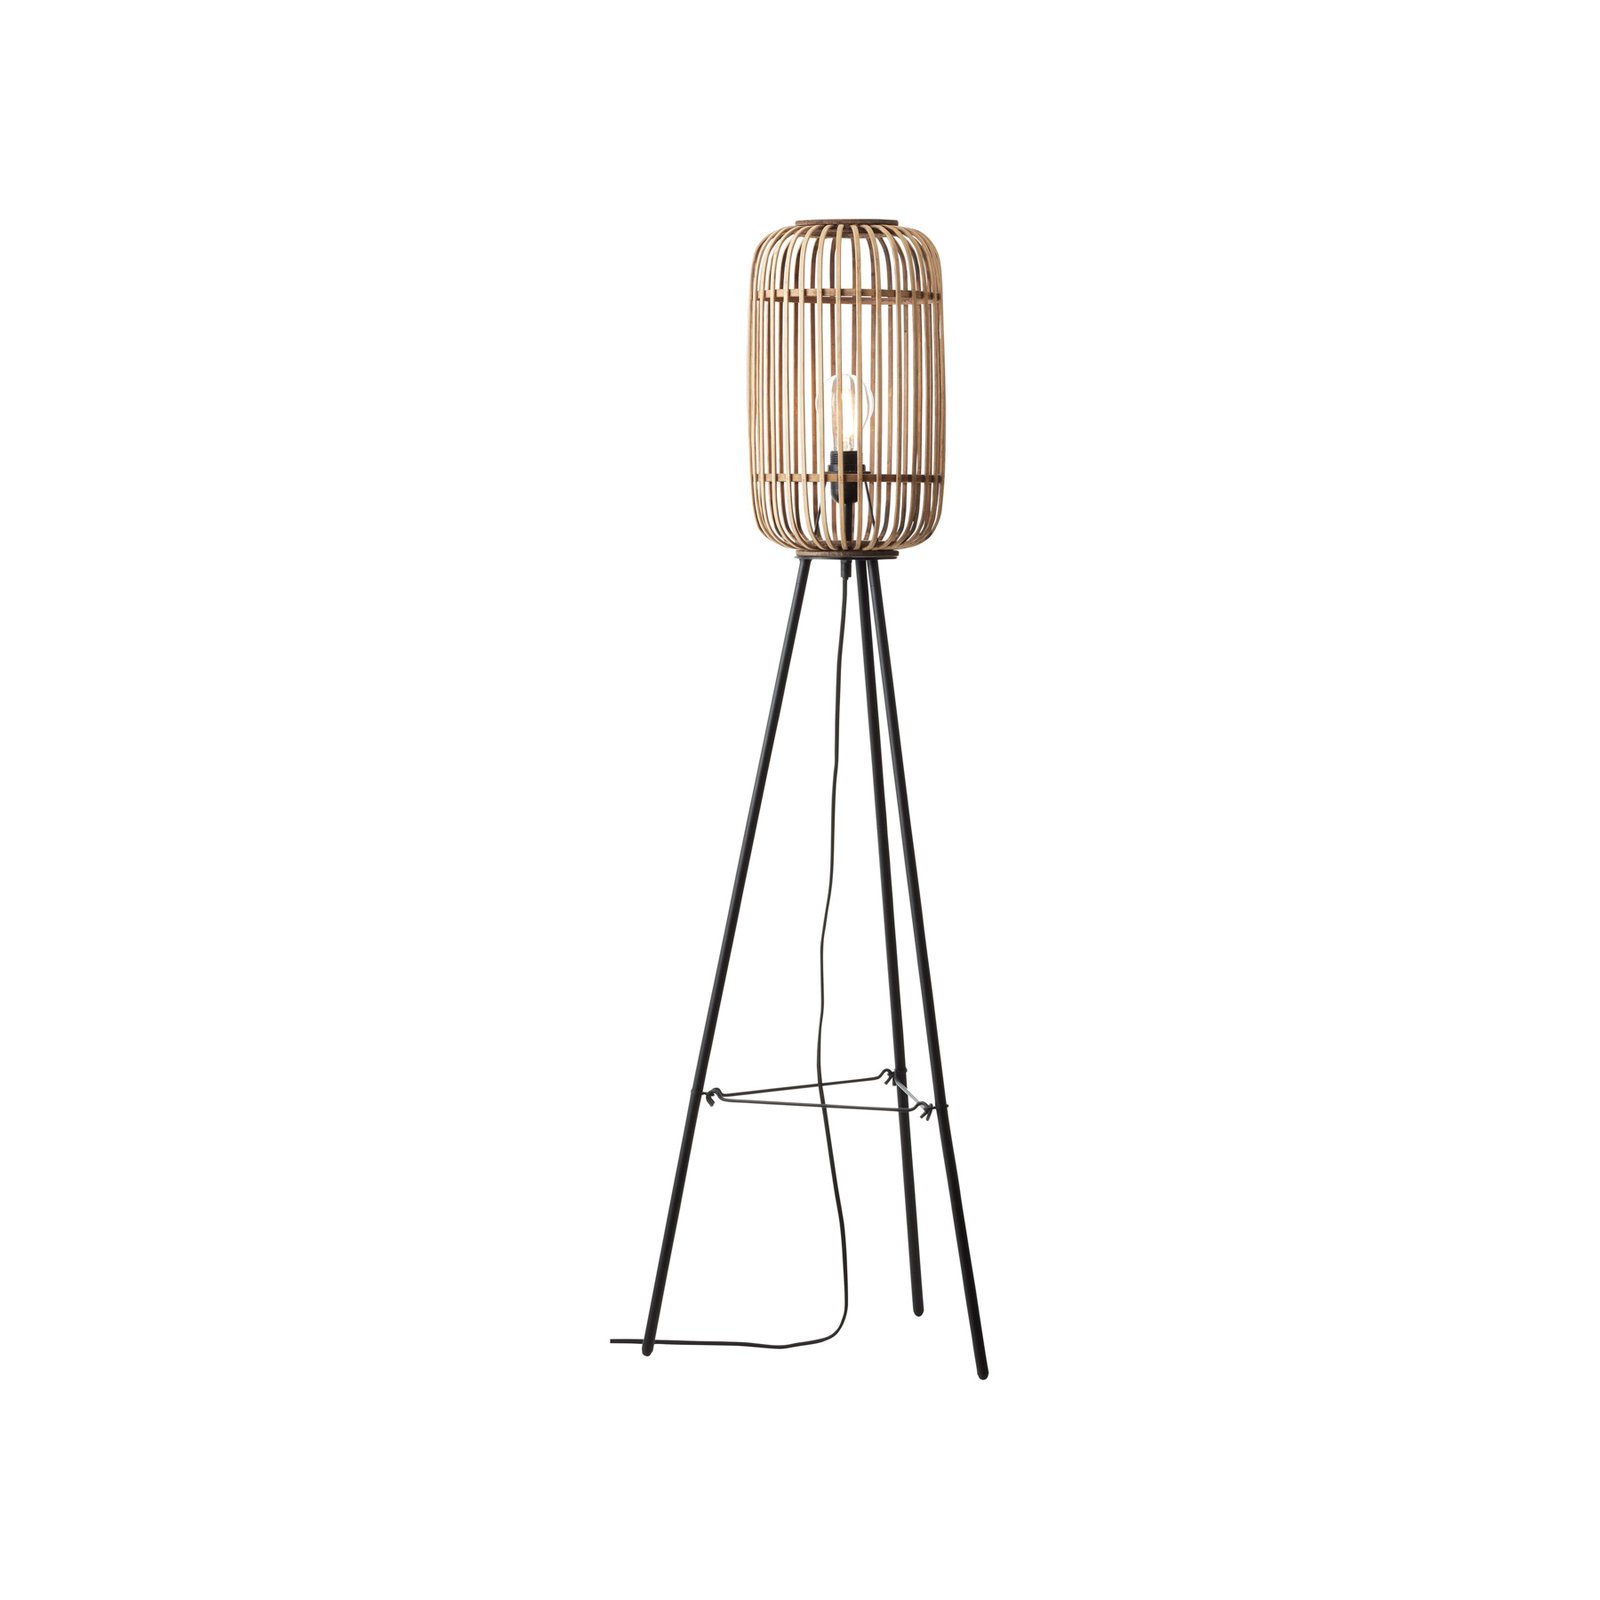 Woodrow gulvlampe, høyde 130 cm, lyst treverk, bambus/metall